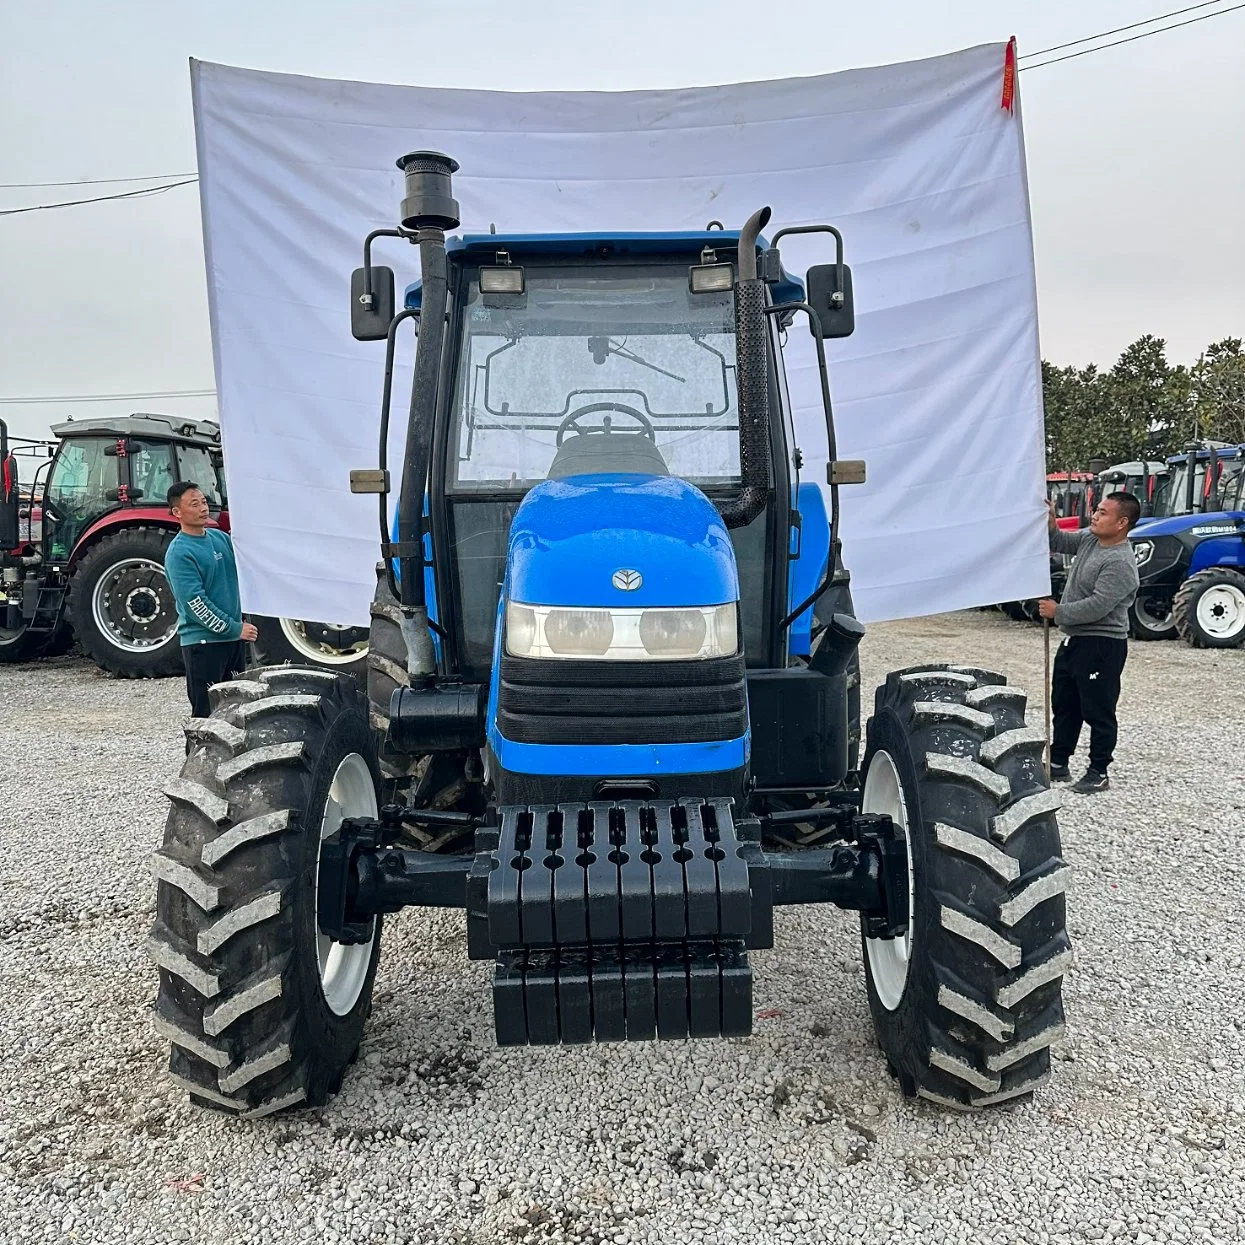 Nuevo Holladn Snh1004 Tractores usados buena maquinaria agrícola y precio barato